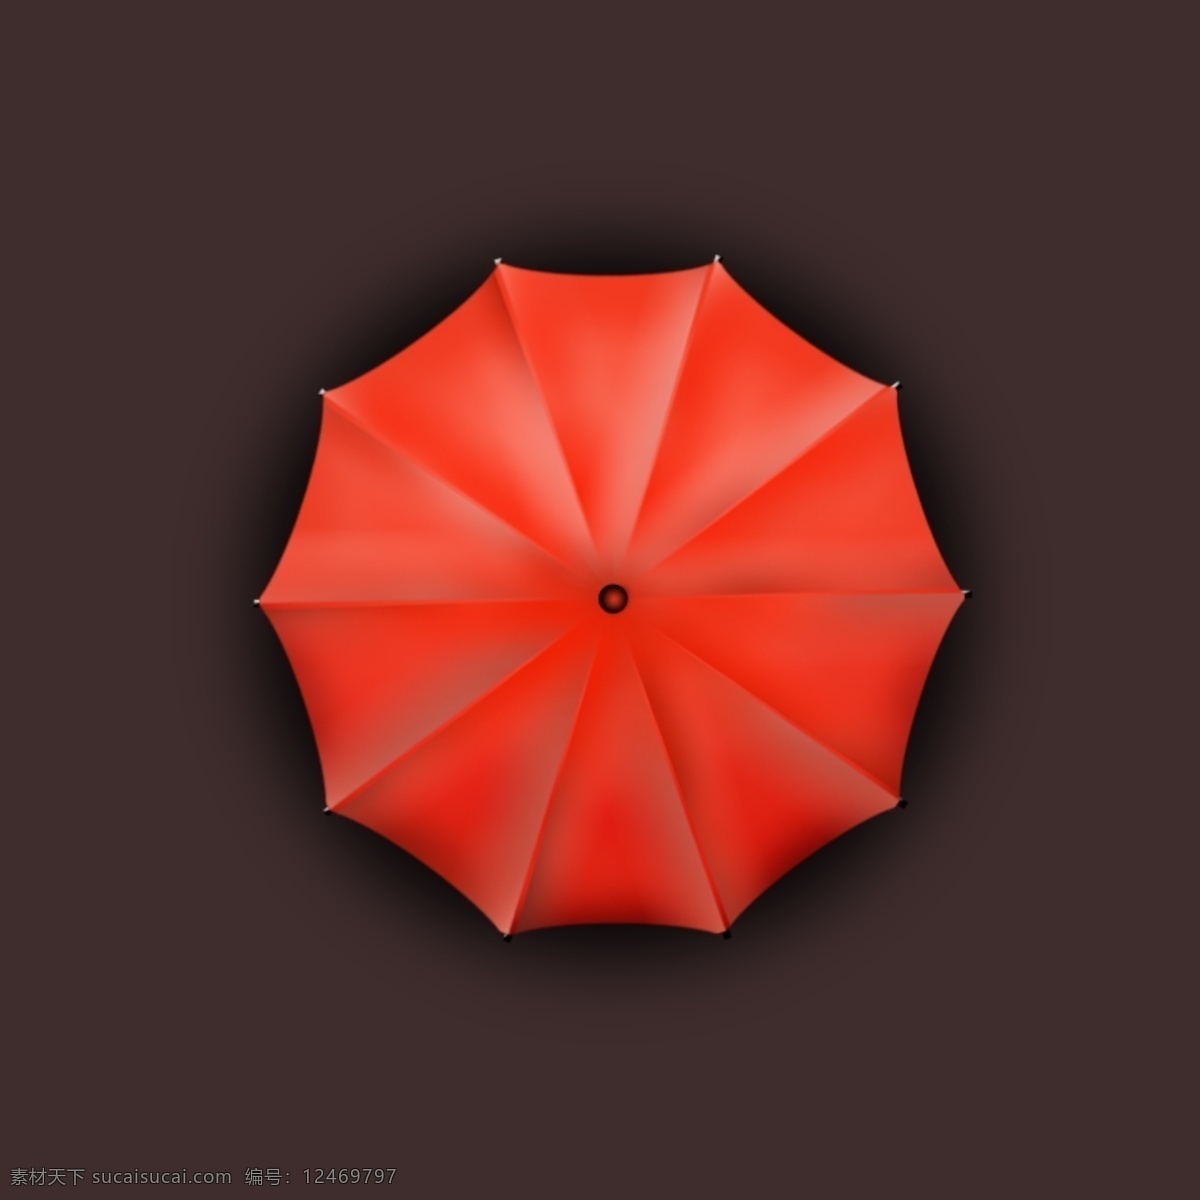 红伞图片唯美,红伞图片唯美古风壁纸 - 伤感说说吧